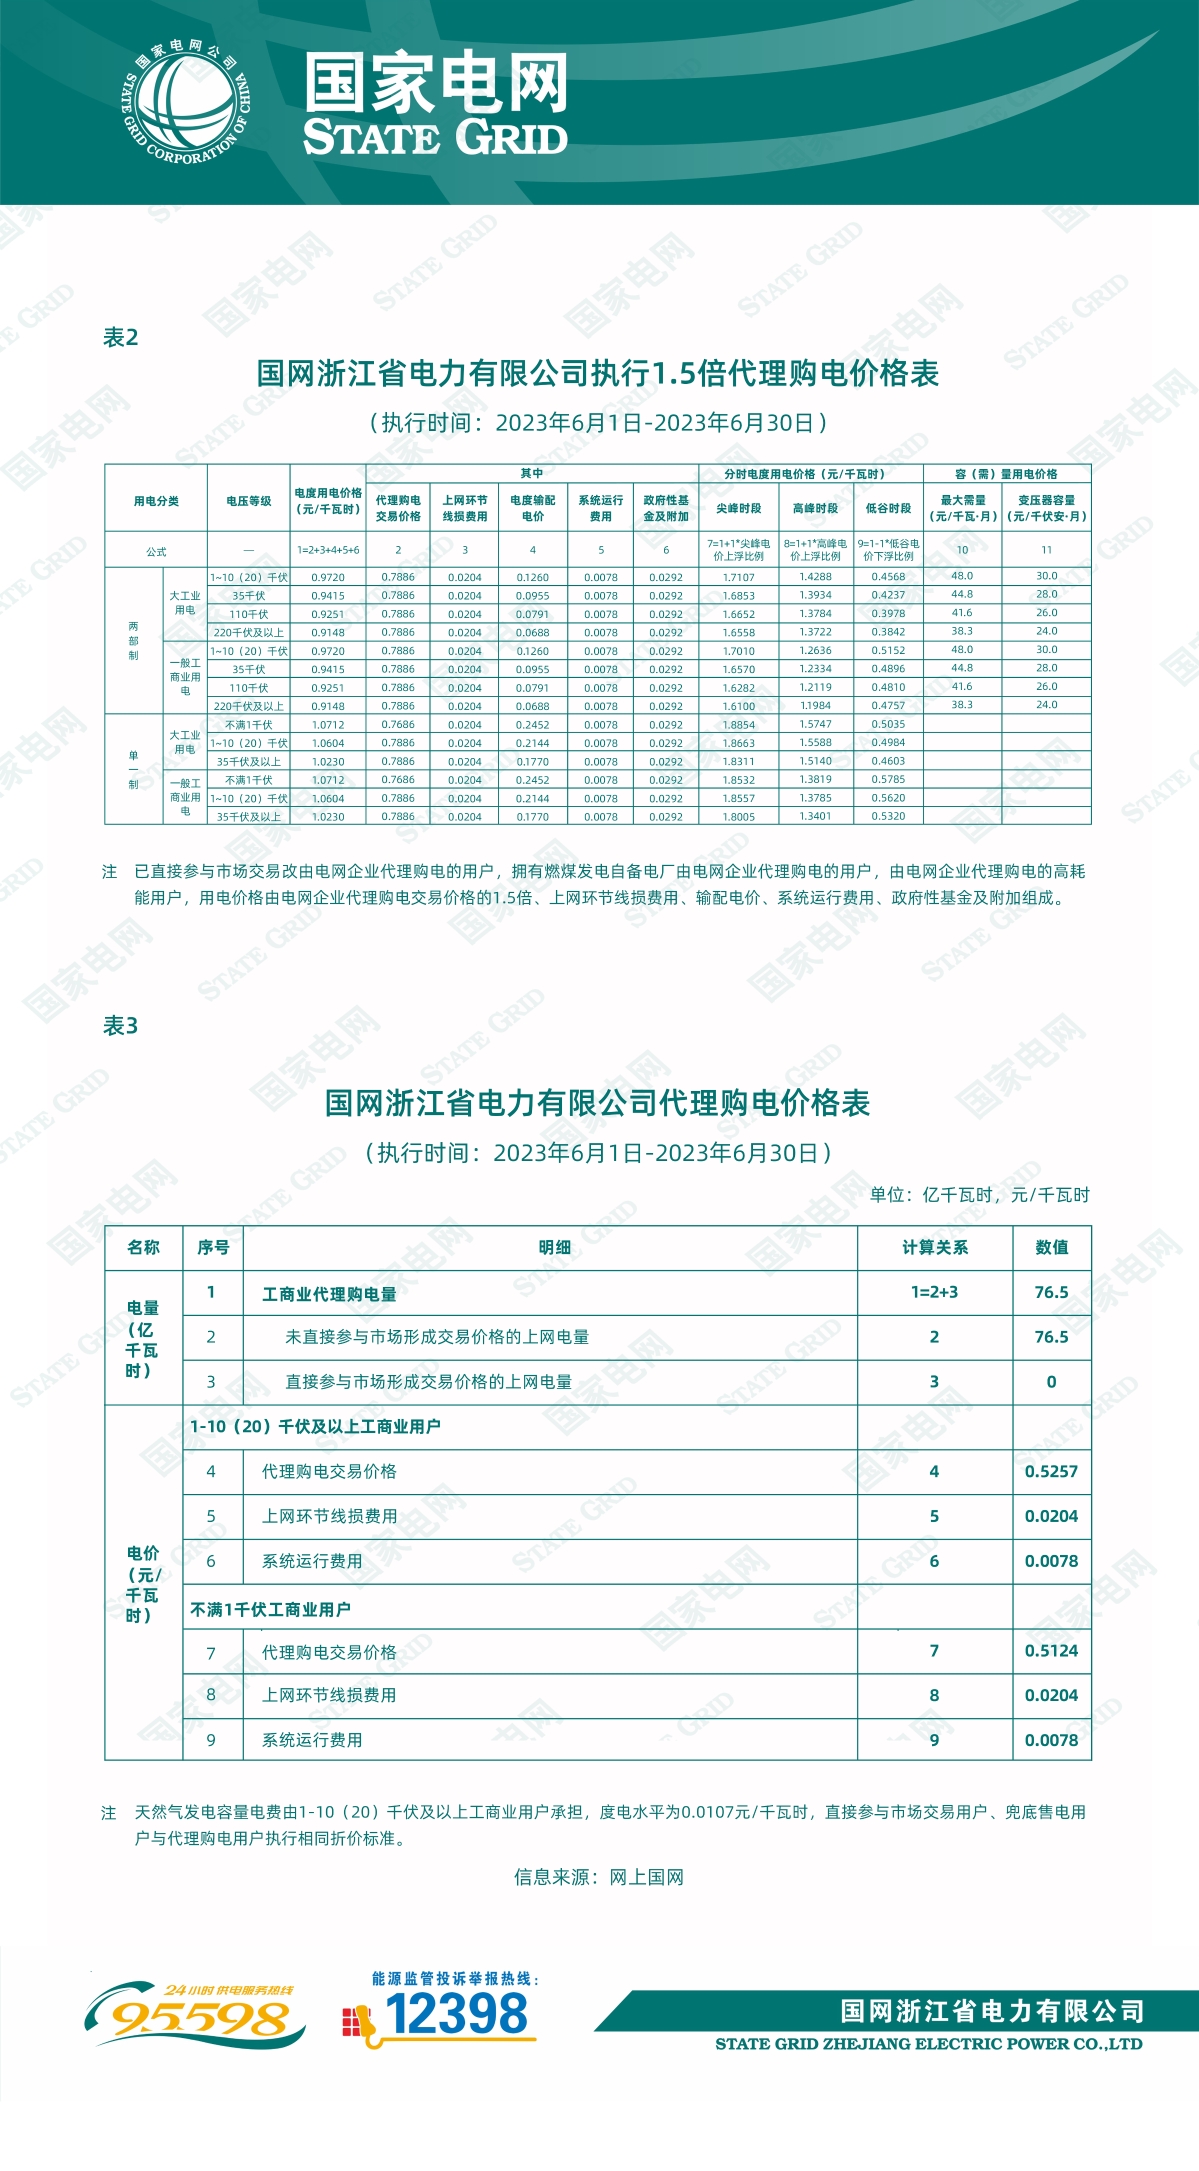 国网浙江省电力有限公司关于2023年6月代理工商业用户购电价格的公告2.jpg